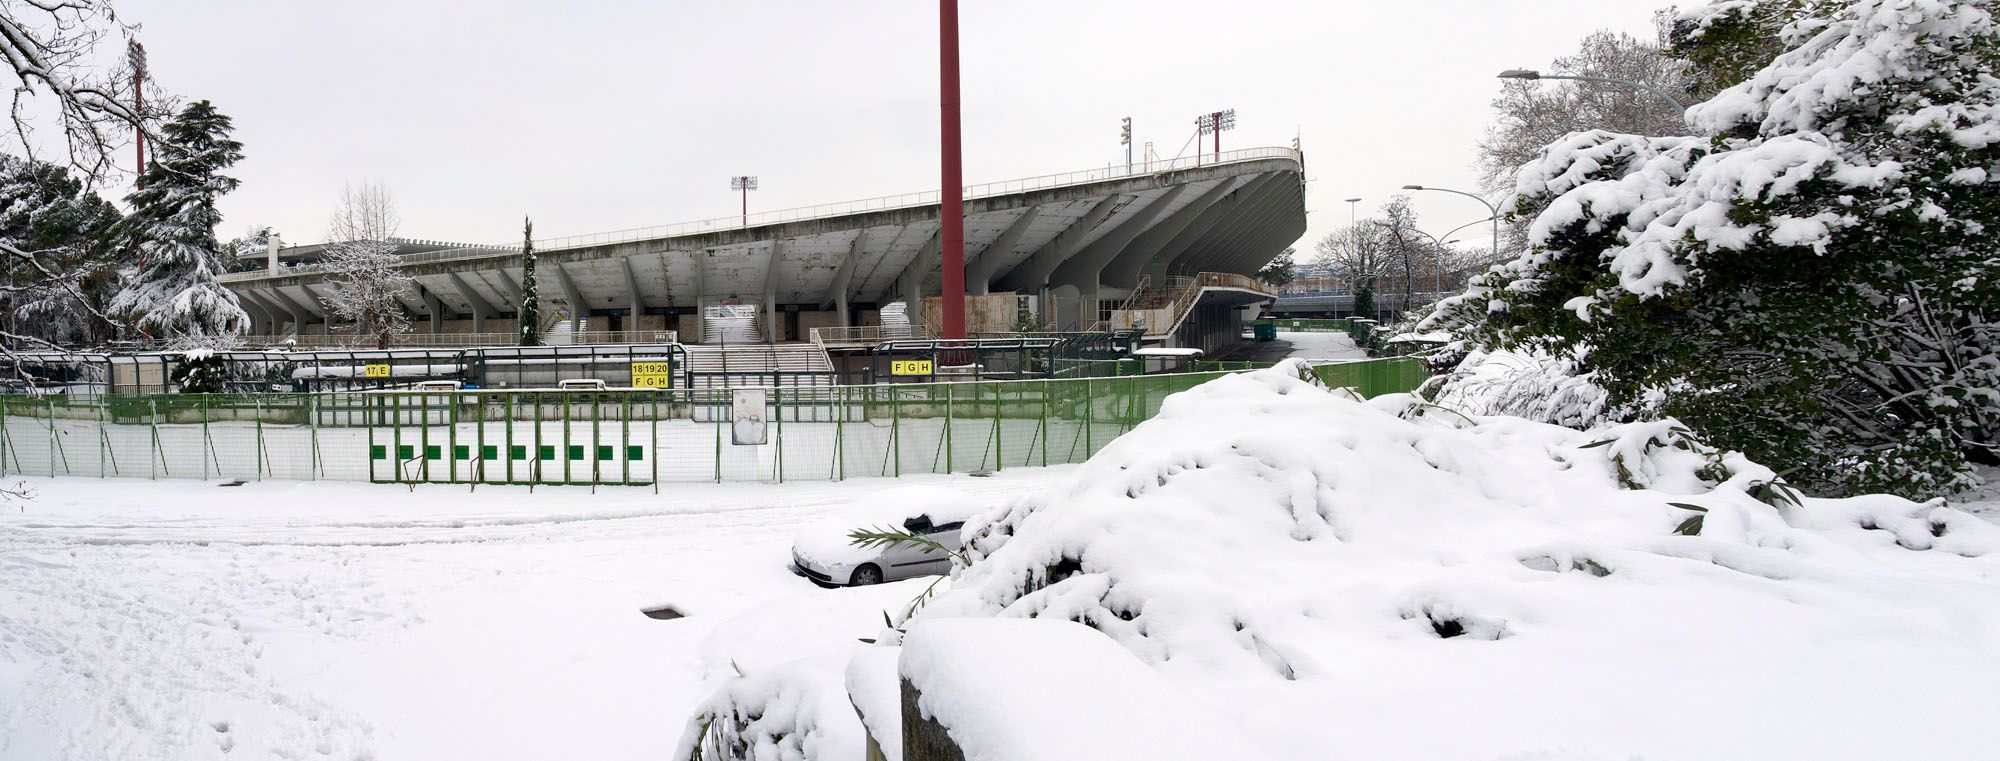 Stadio Flaminio nella neve